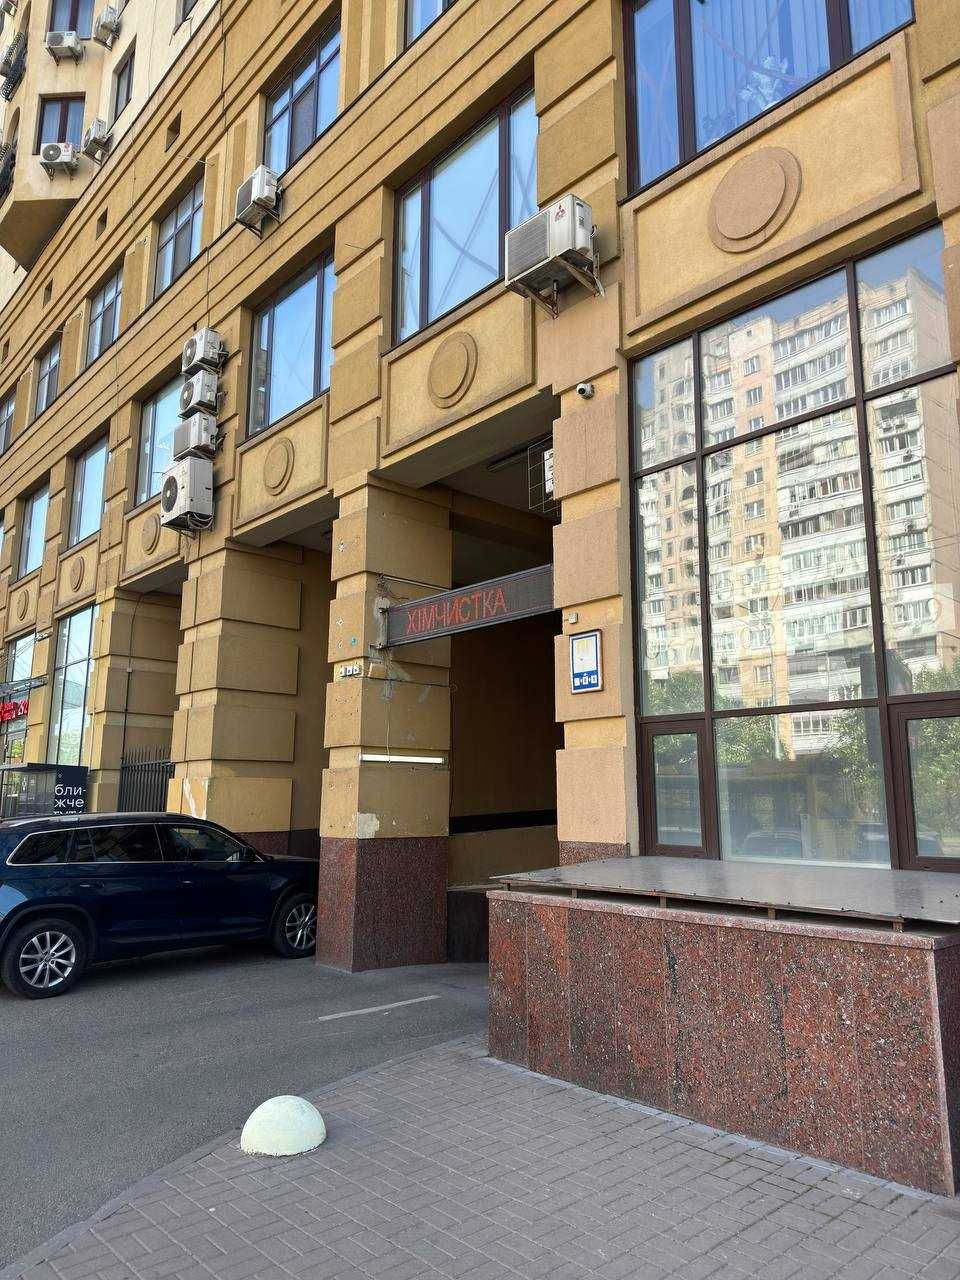 Аренда / Офис / Черновола, Лукьяновка, Киев